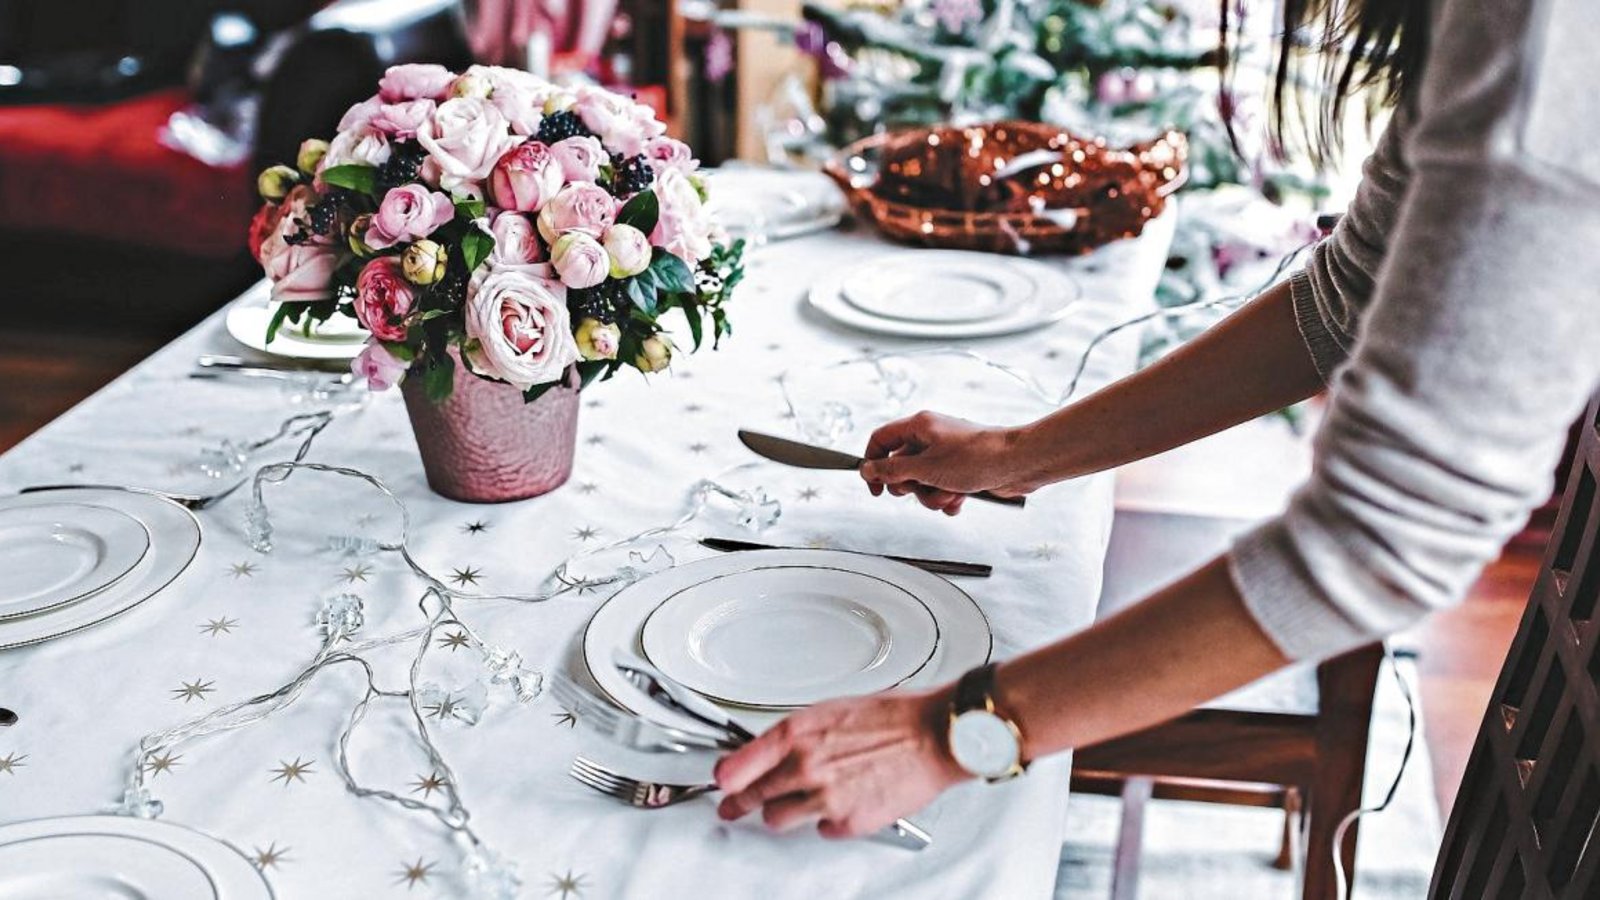 An Weihnachten darf die Festtafel für bis zu zehn Personen aus unterschiedlichen Haushalten gedeckt werden, ansonsten gilt aktuell: bei fünf ist Schluss samt weiterer Regeln. Foto: Grabowska/Pixabay